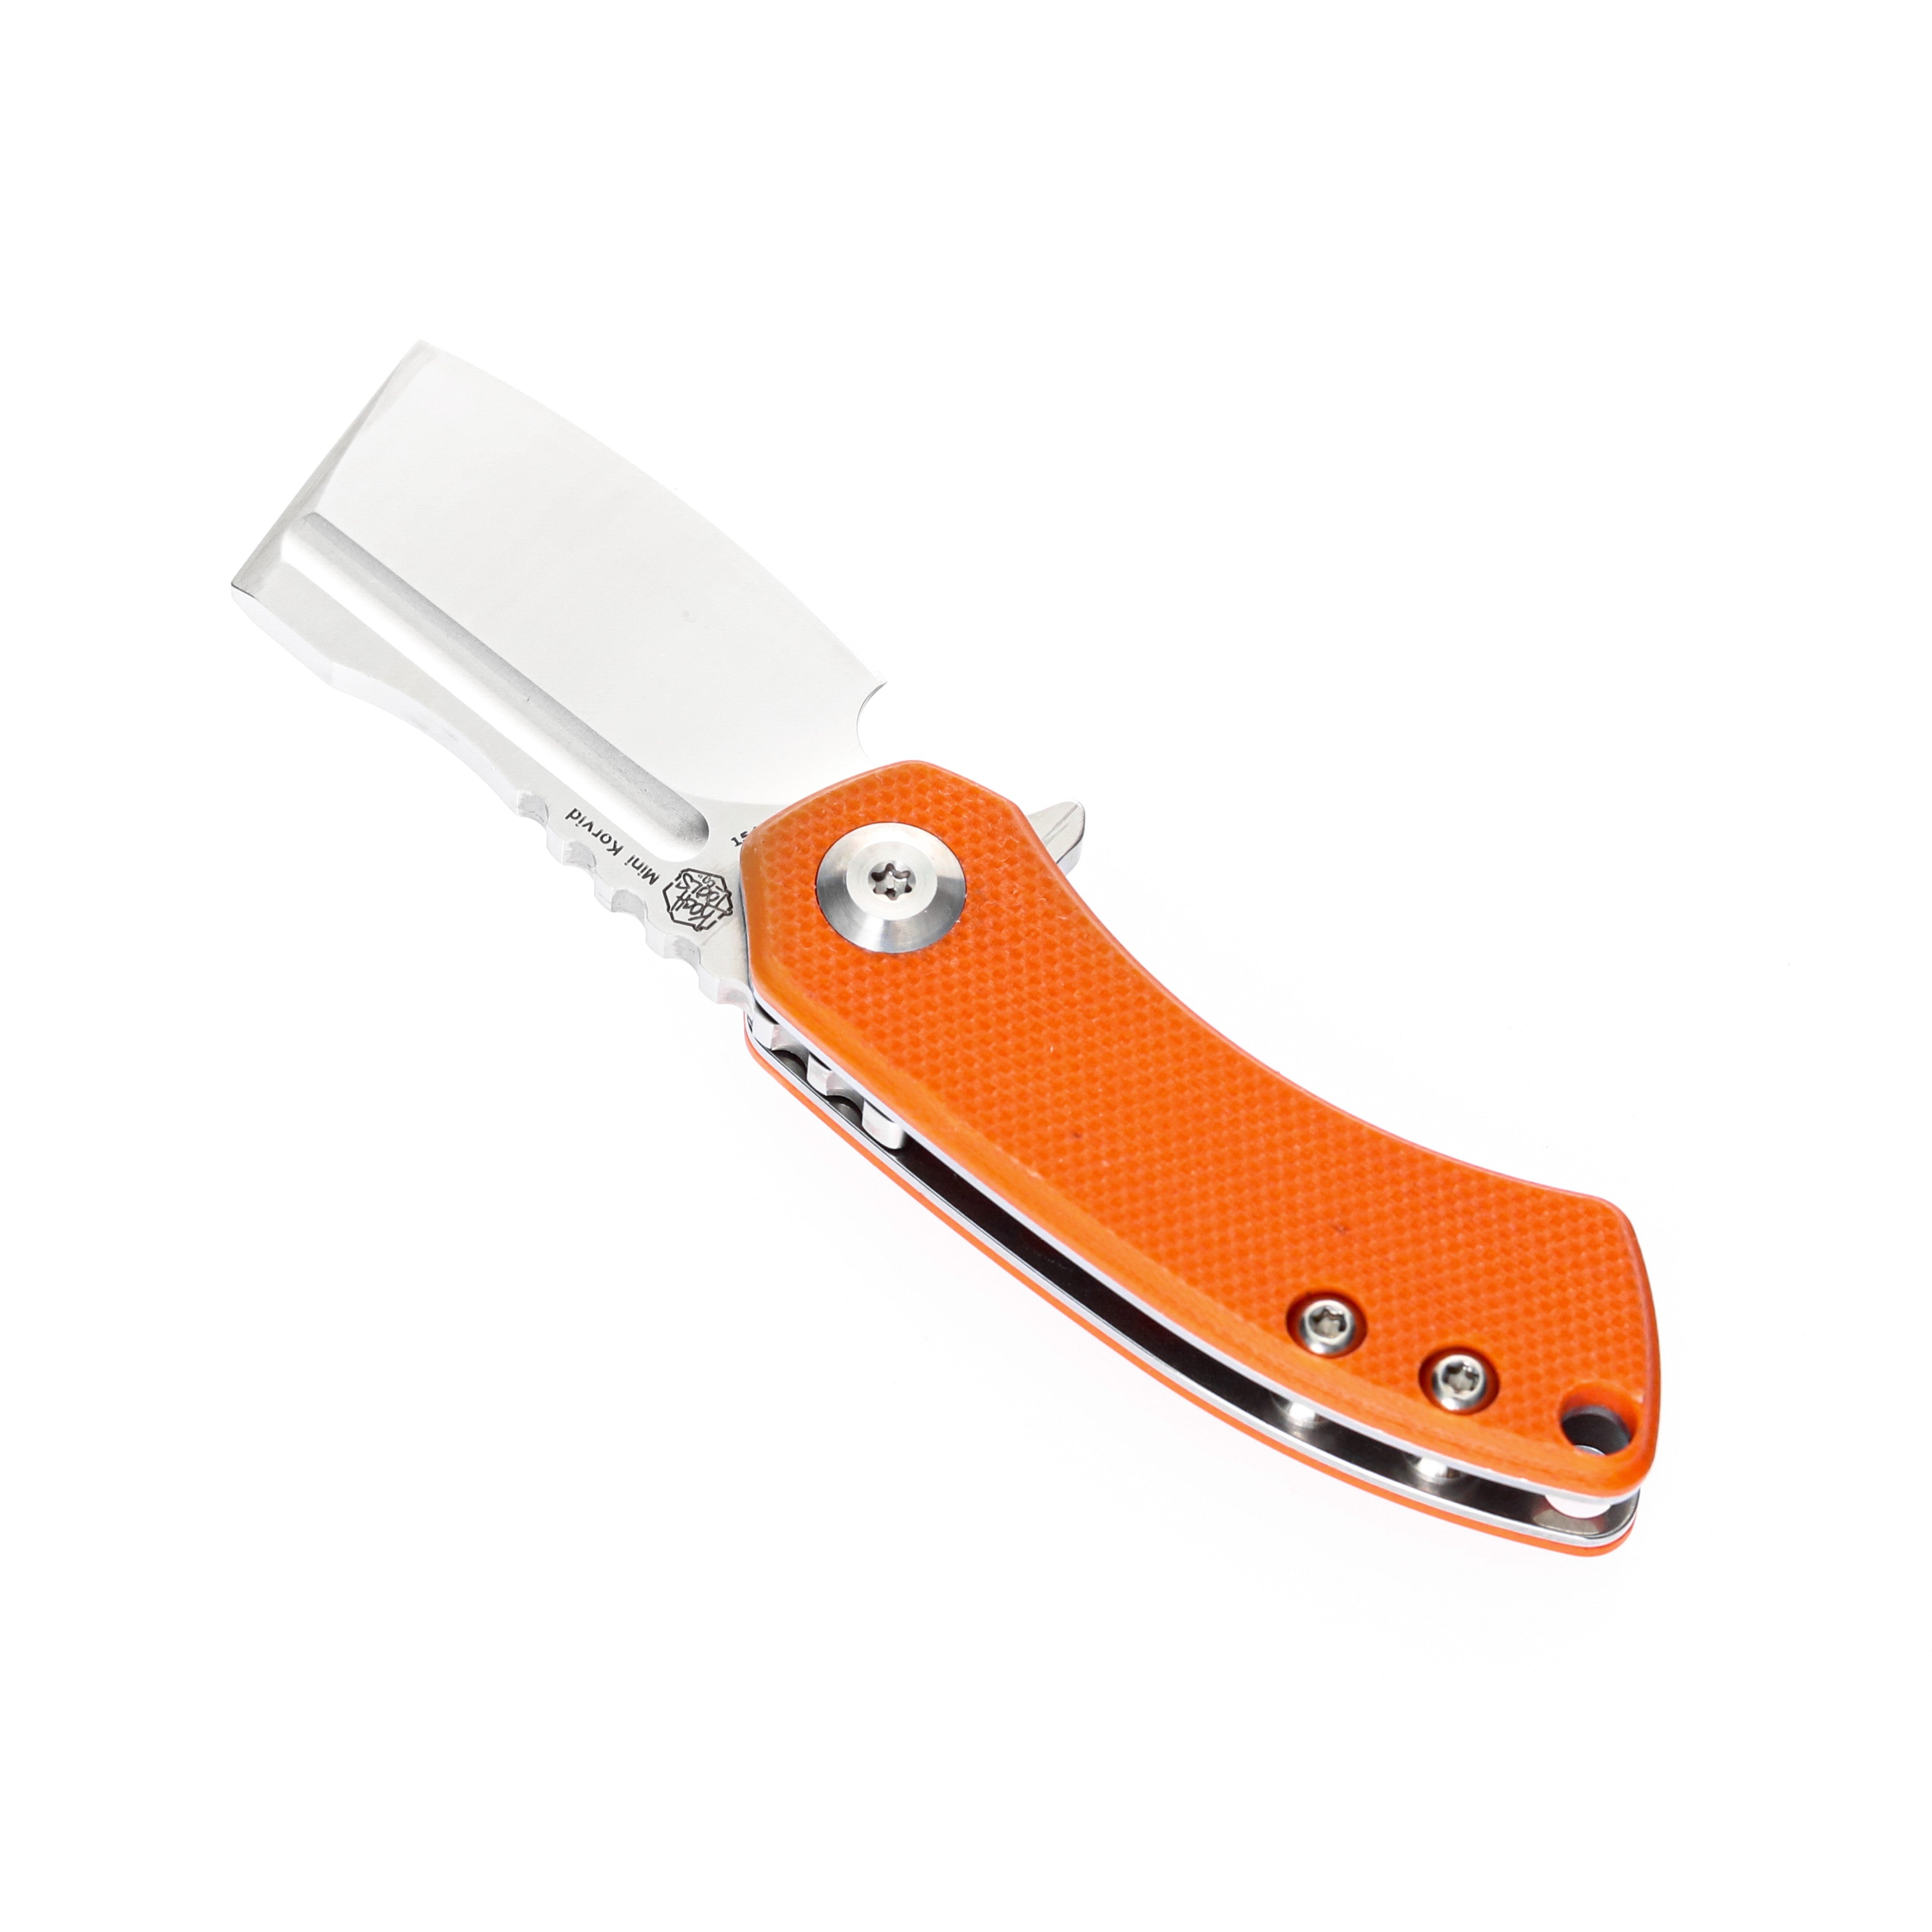 Kansept 刀具 T3030A6 迷你 Korvid 154 厘米刀片橙色 G10 手柄内衬锁 Edc 刀具